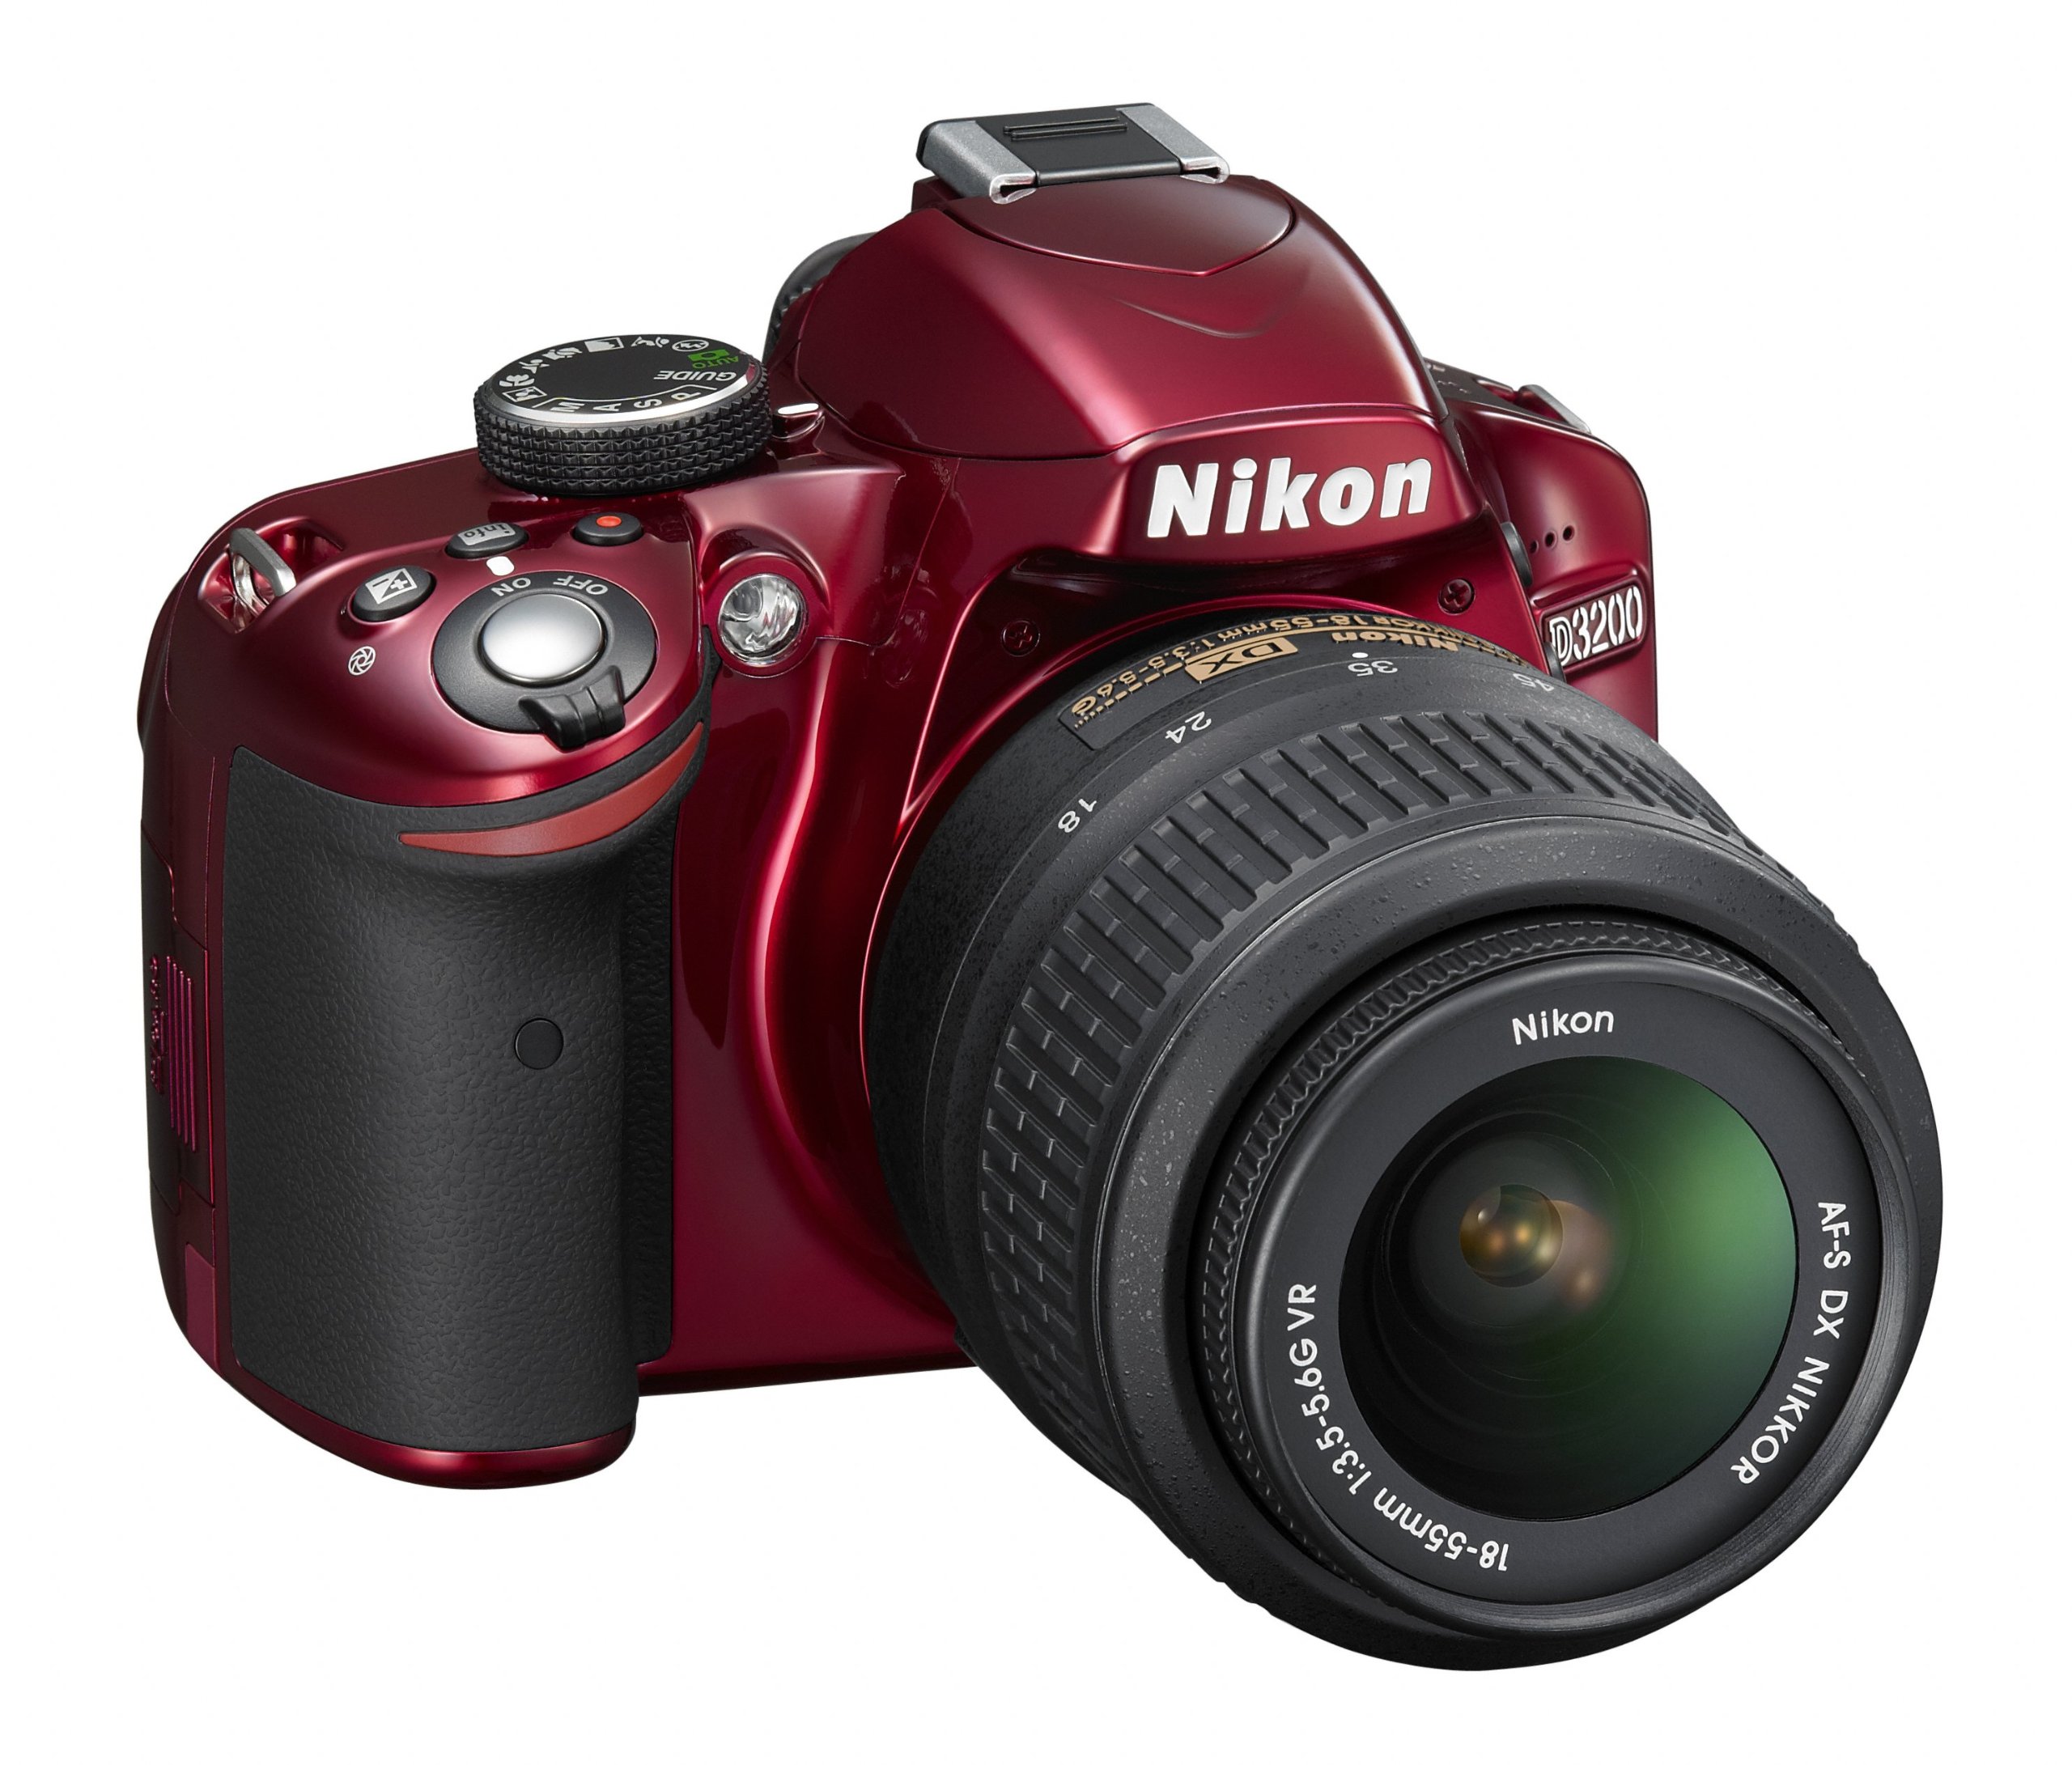 Nikon D3200 24.2 MP CMOS Digital SLR with 18-55mm f/3.5-5.6 AF-S DX VR NIKKOR Zoom Lens (Red)